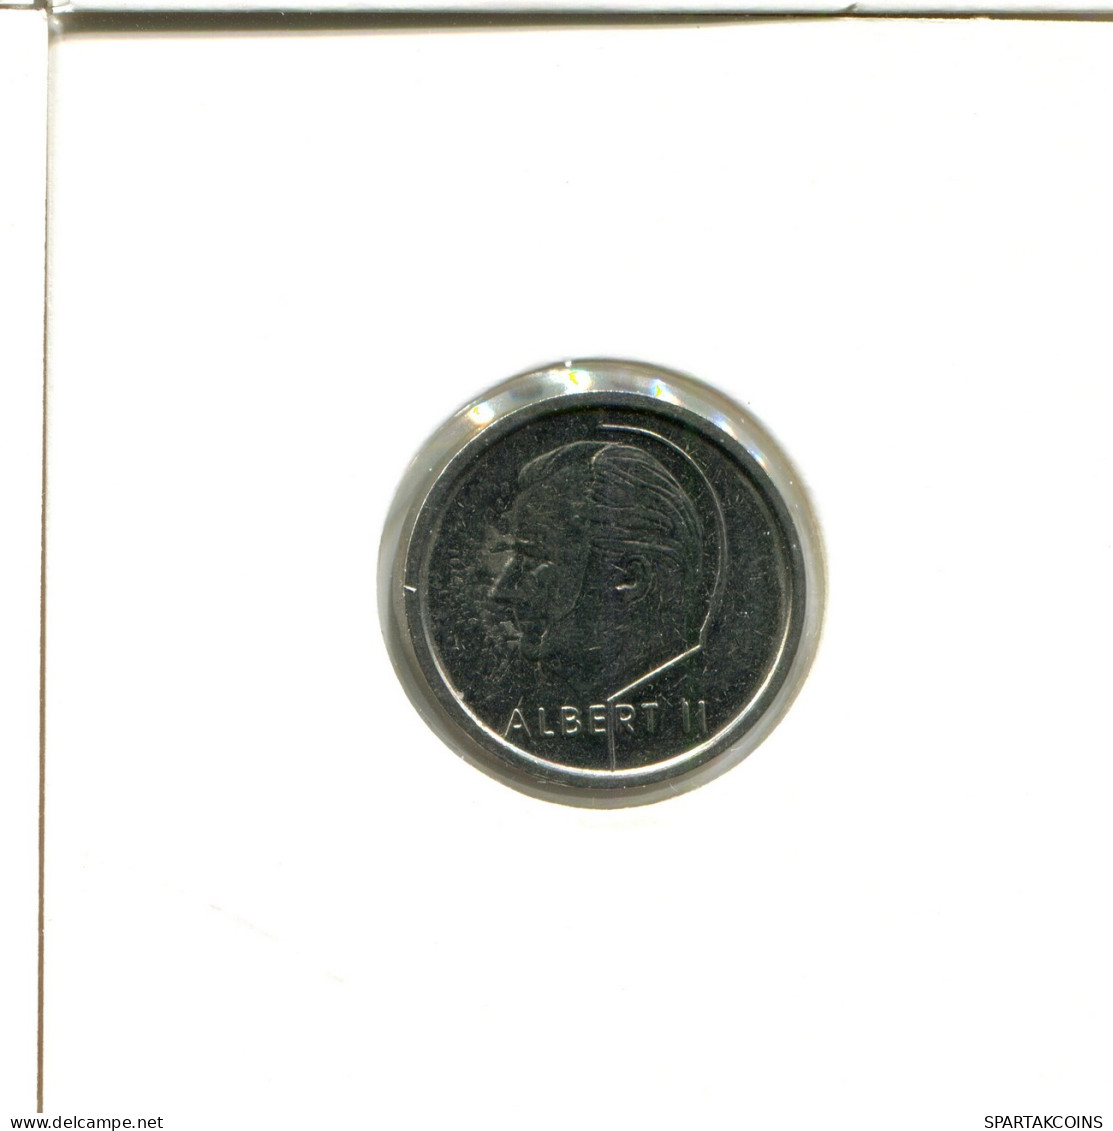 1 FRANC 1994 BÉLGICA BELGIUM Moneda DUTCH Text #AX420.E - 1 Franc